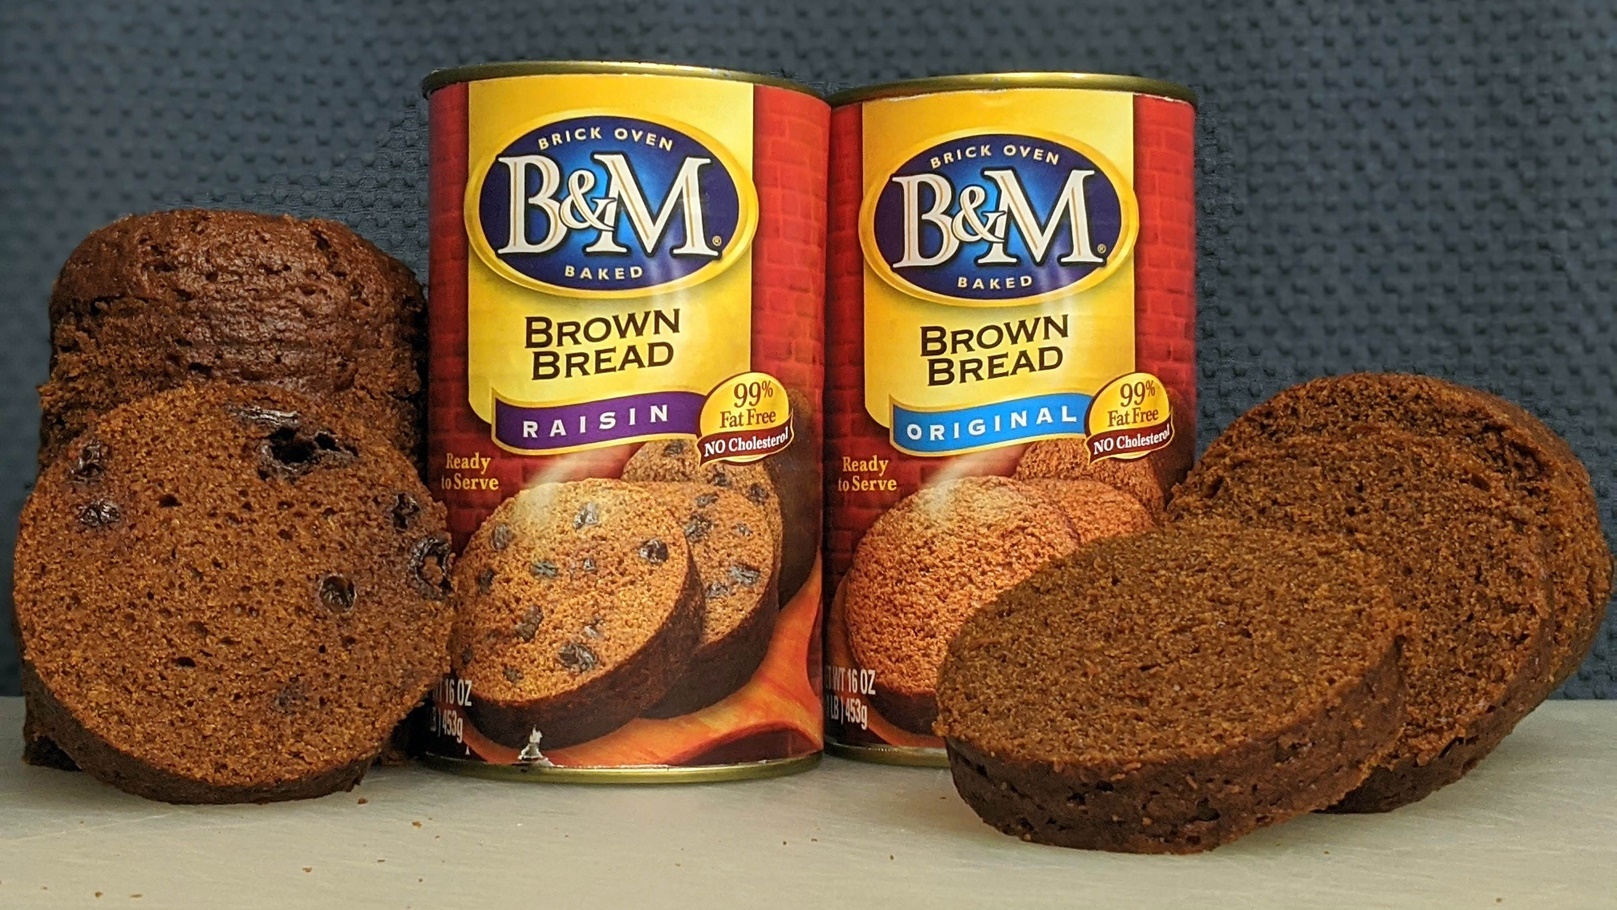 خبز B&M المعلب بنيو انجلاند